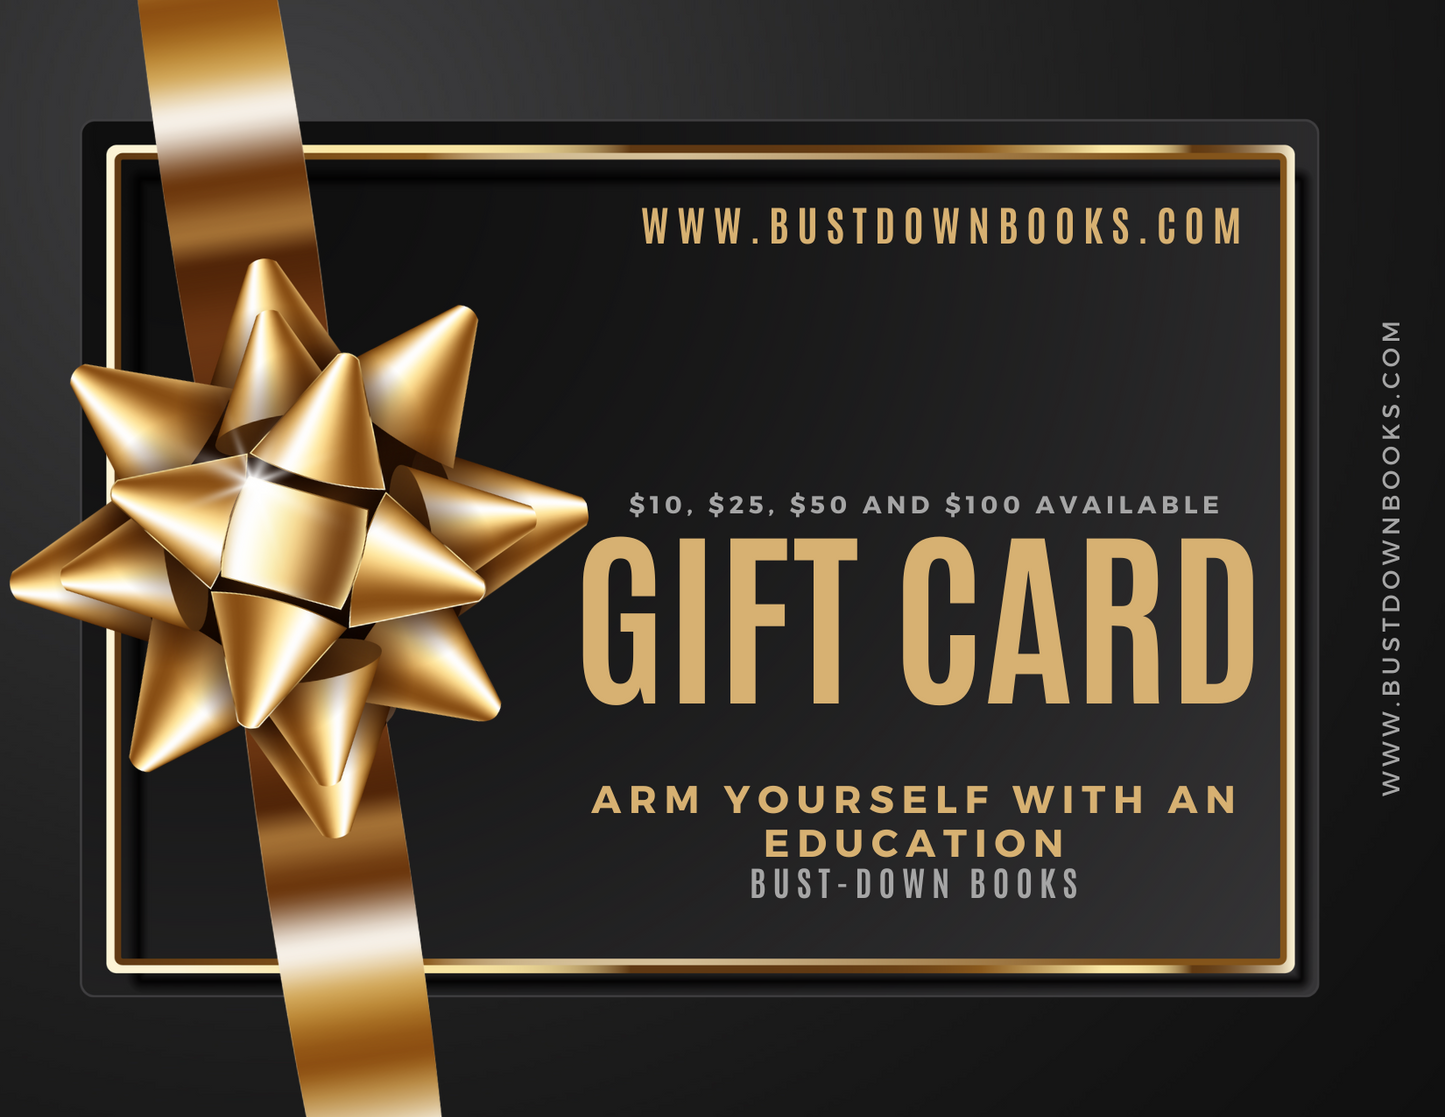 Bust-Down Books e-Gift Card